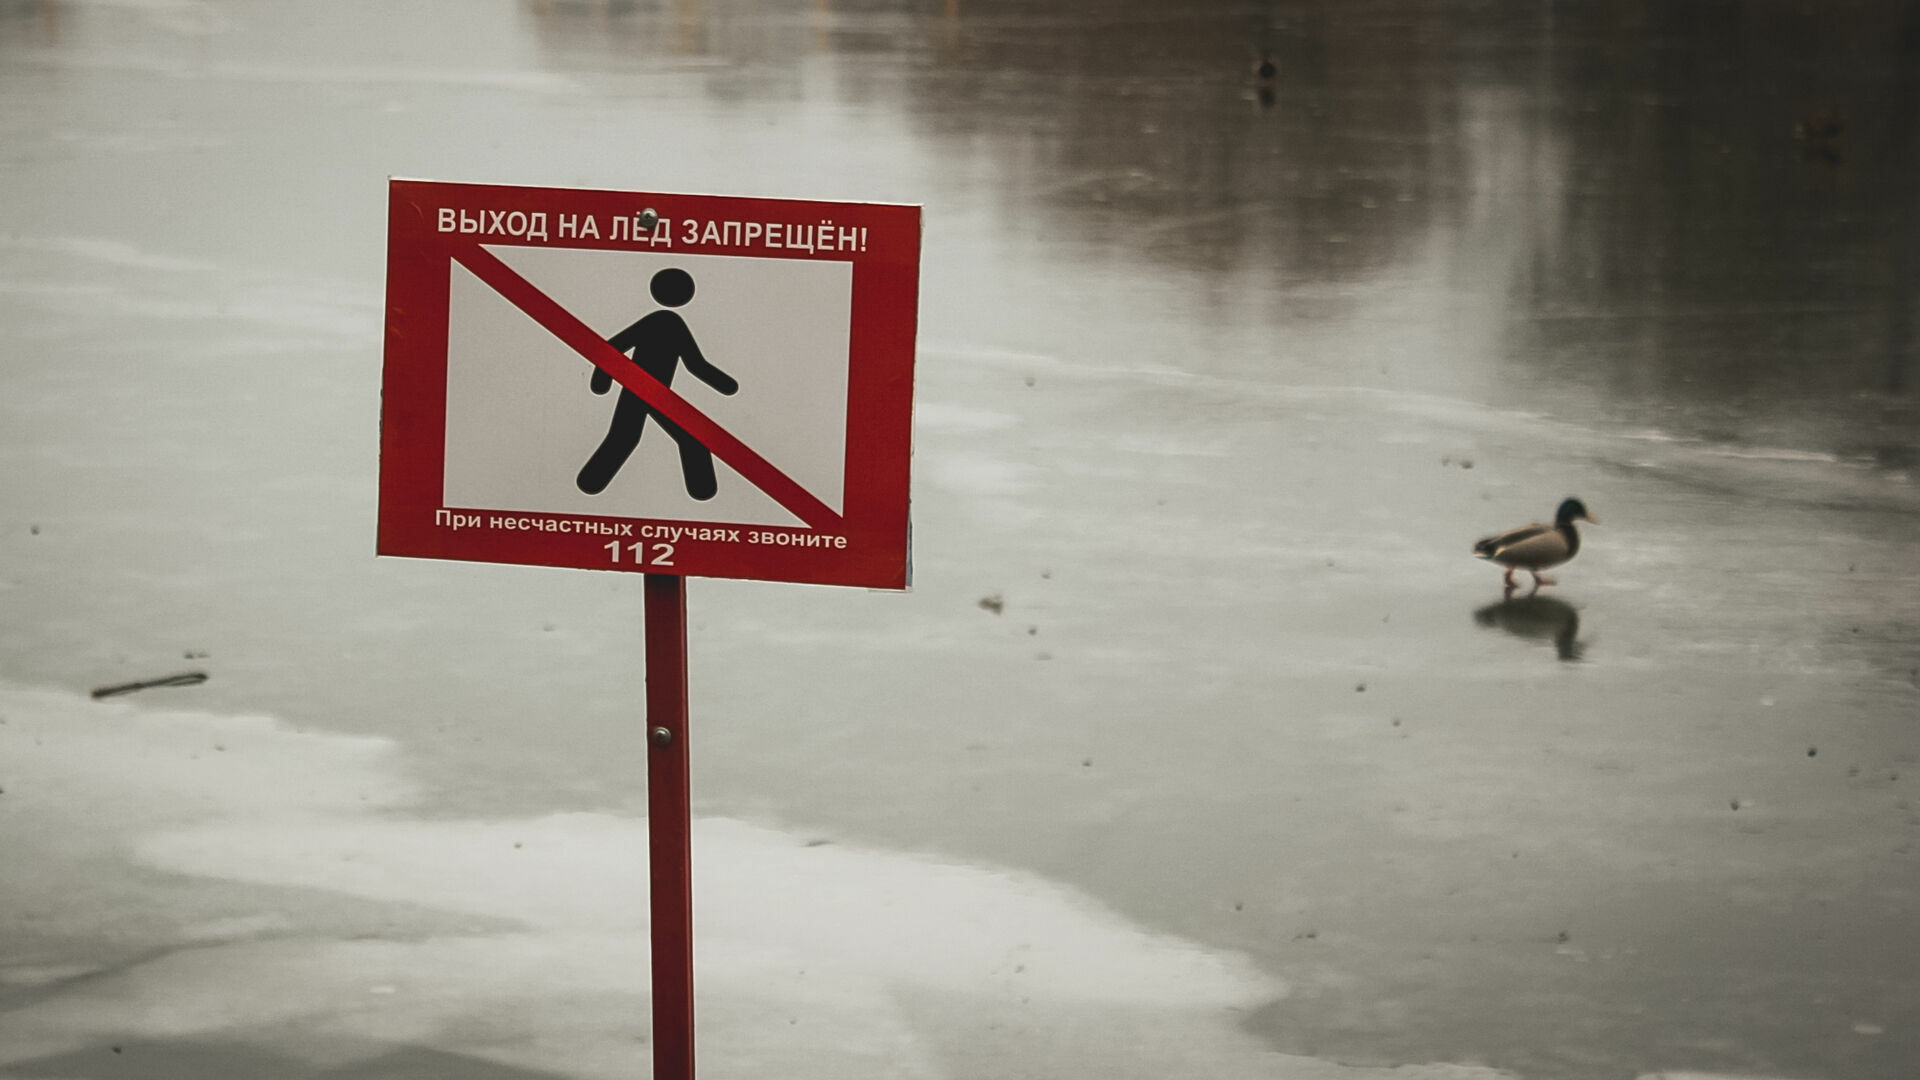 Мужчина с собакой провалились под лед в Карелии